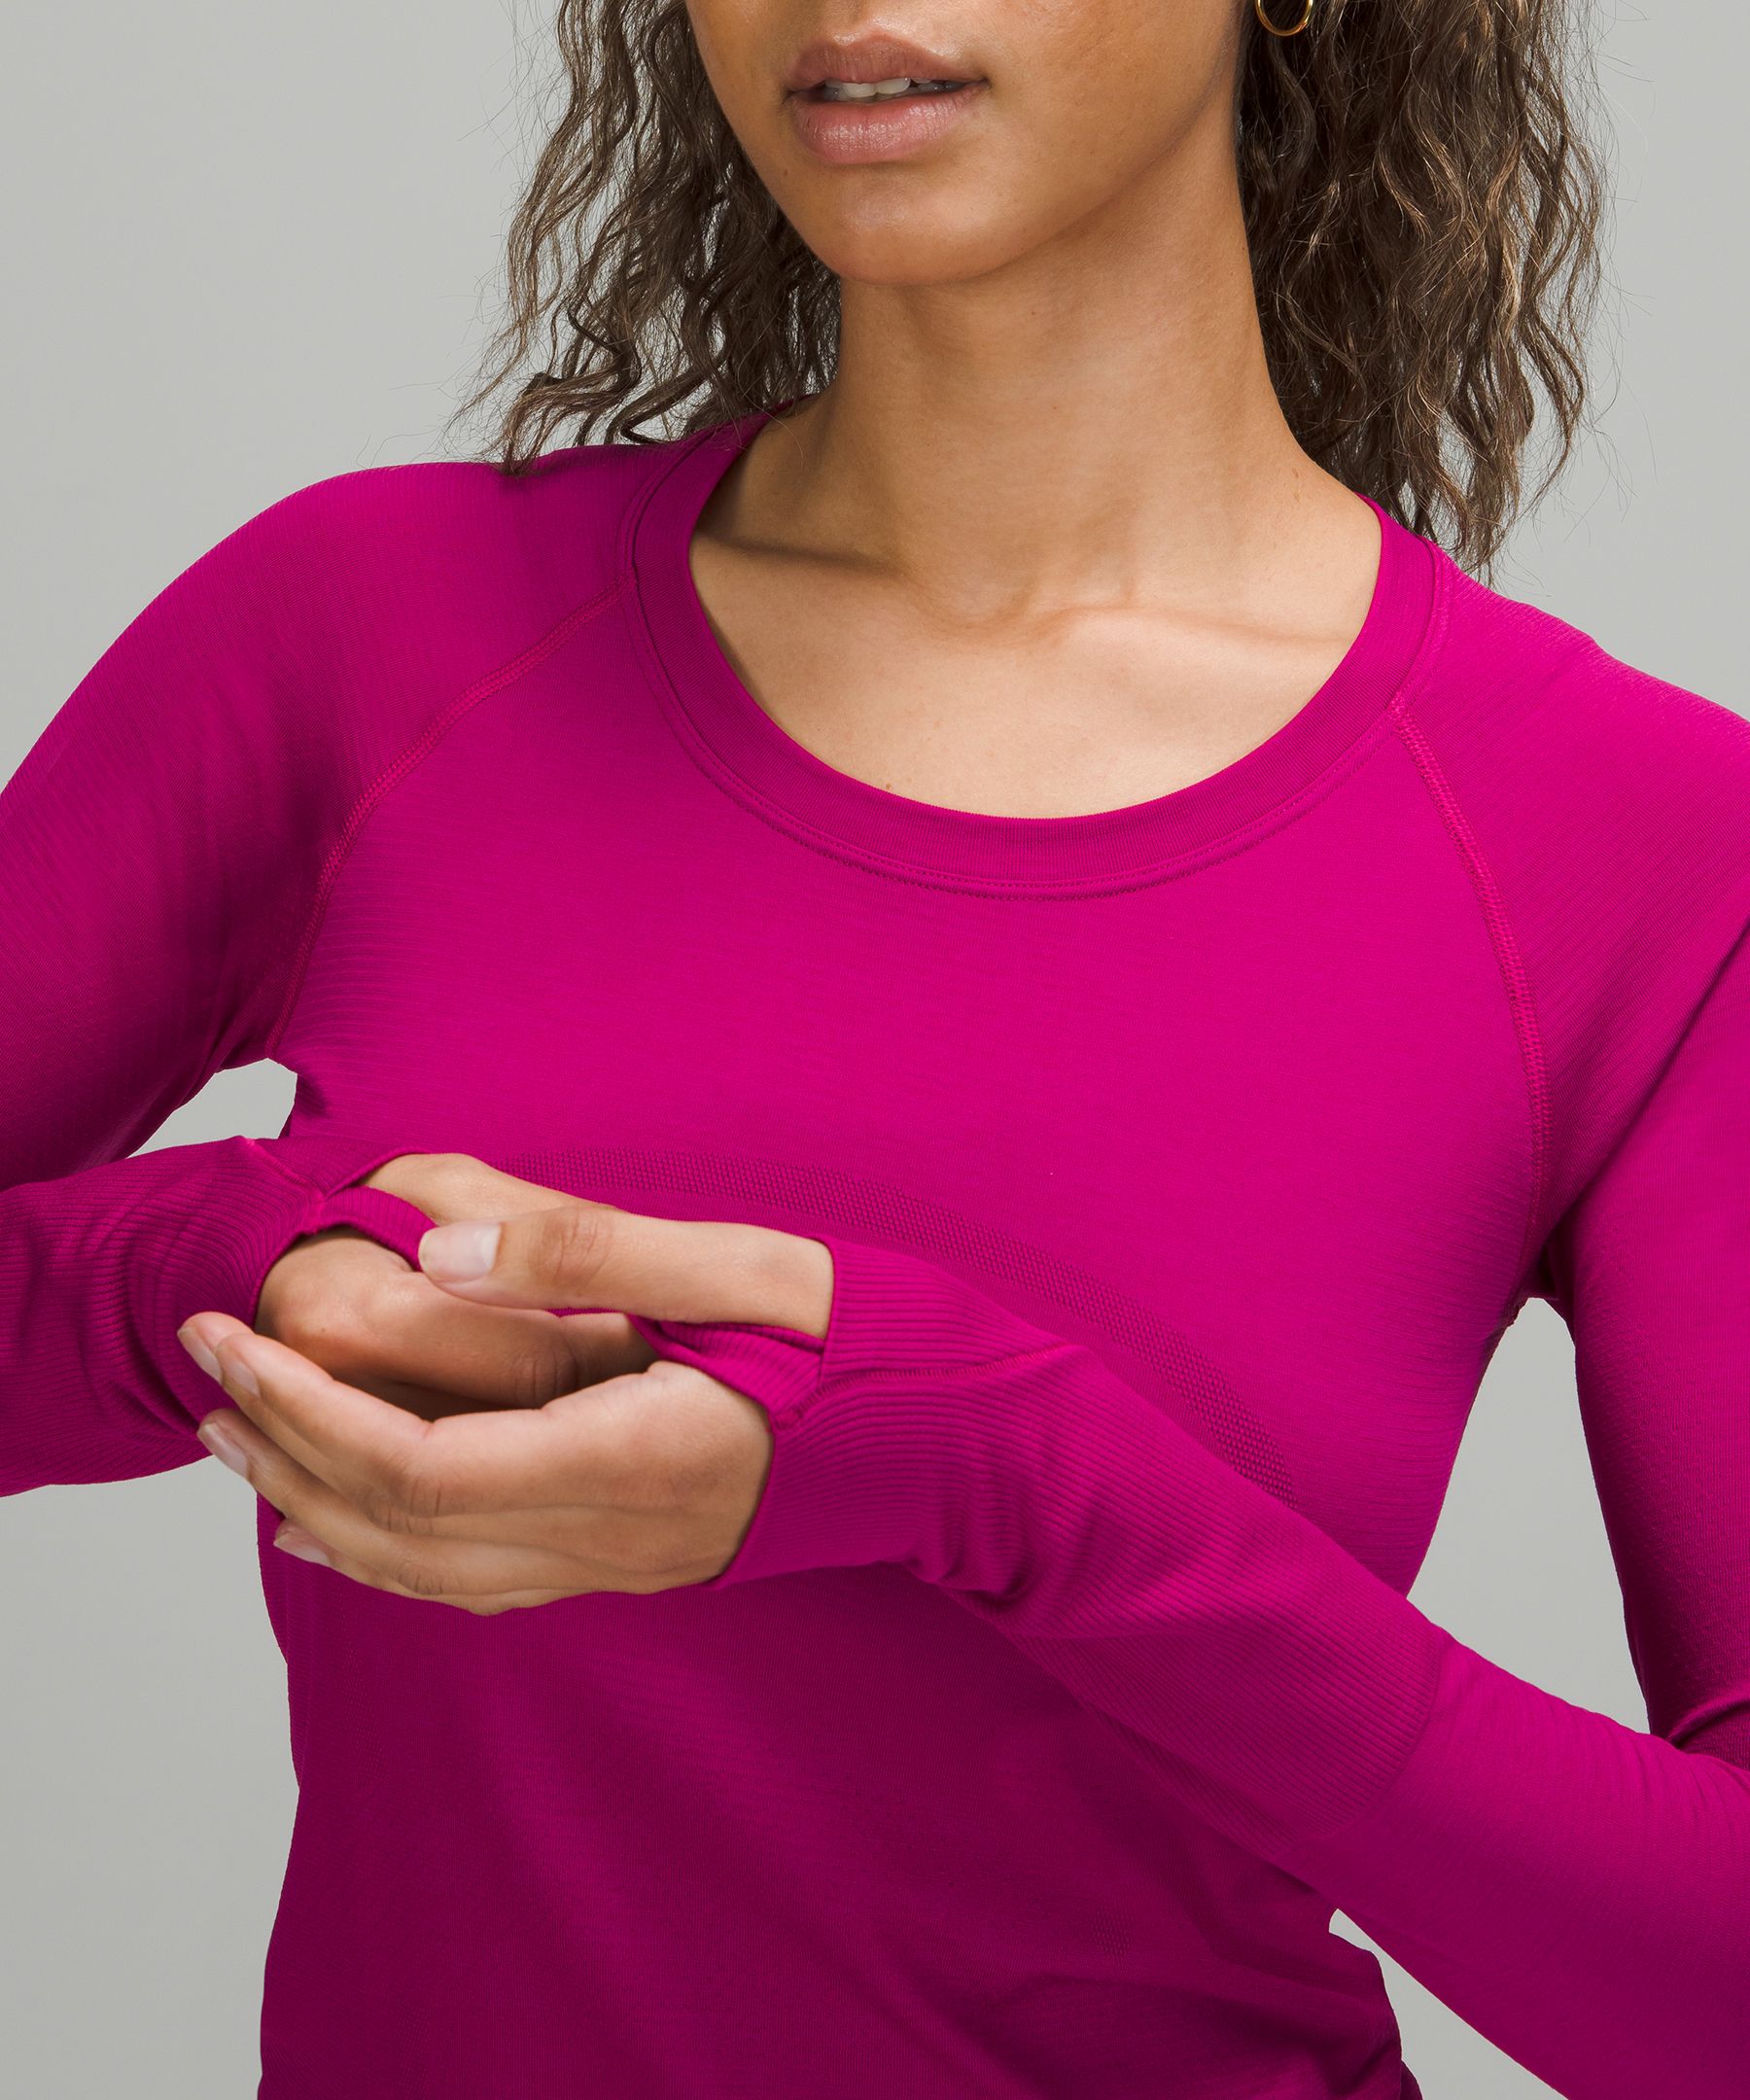 Swiftly Tech Long Sleeve Shirt 2.0 | Women's Long Sleeve Shirts 